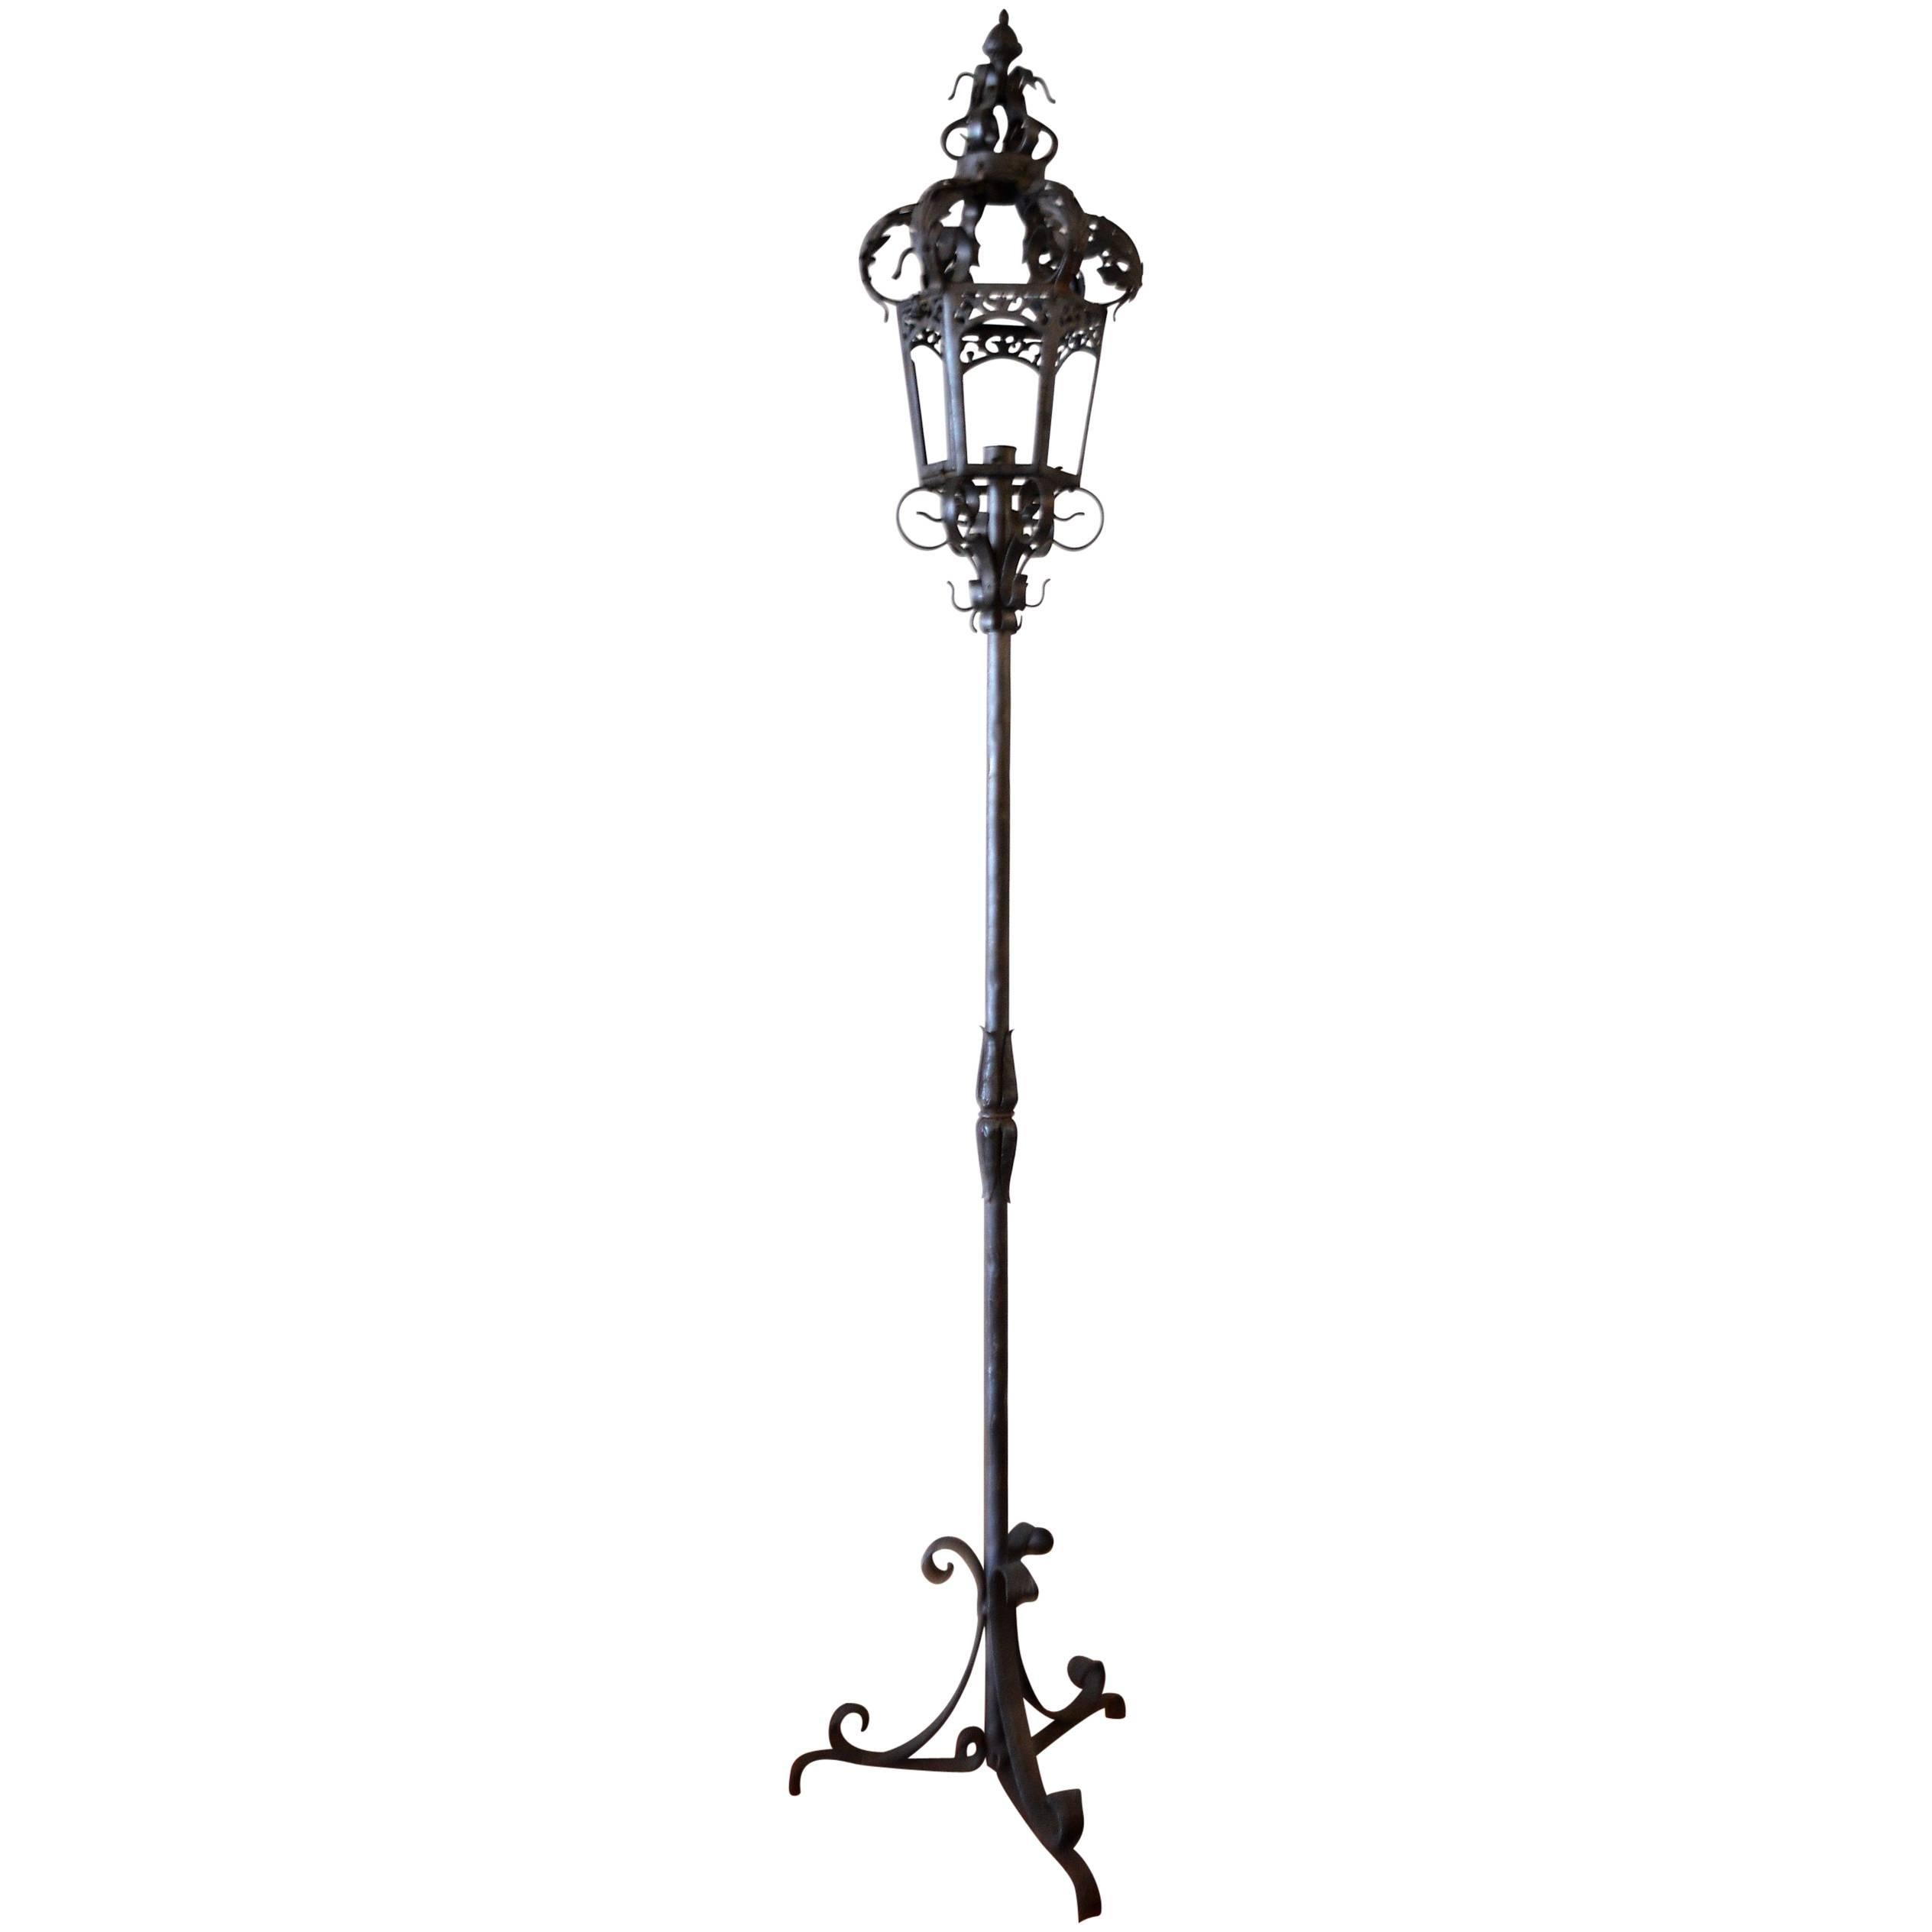 Wrought Iron Venetian Floor Lamp for Outdoor or Indoor, Can Be Electified